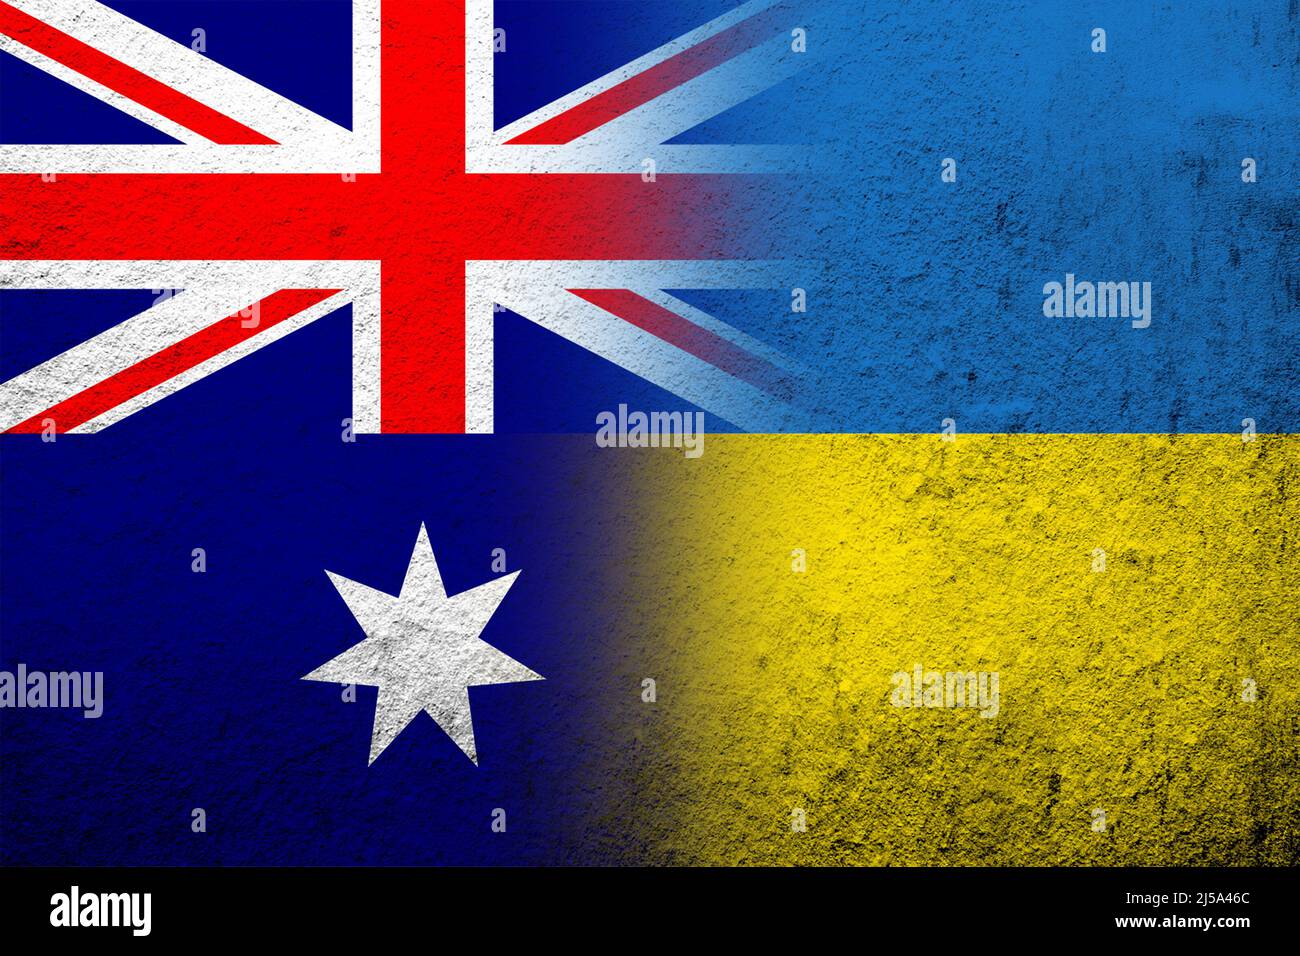 National flag of Australia with National flag of Ukraine. Grunge background Stock Photo